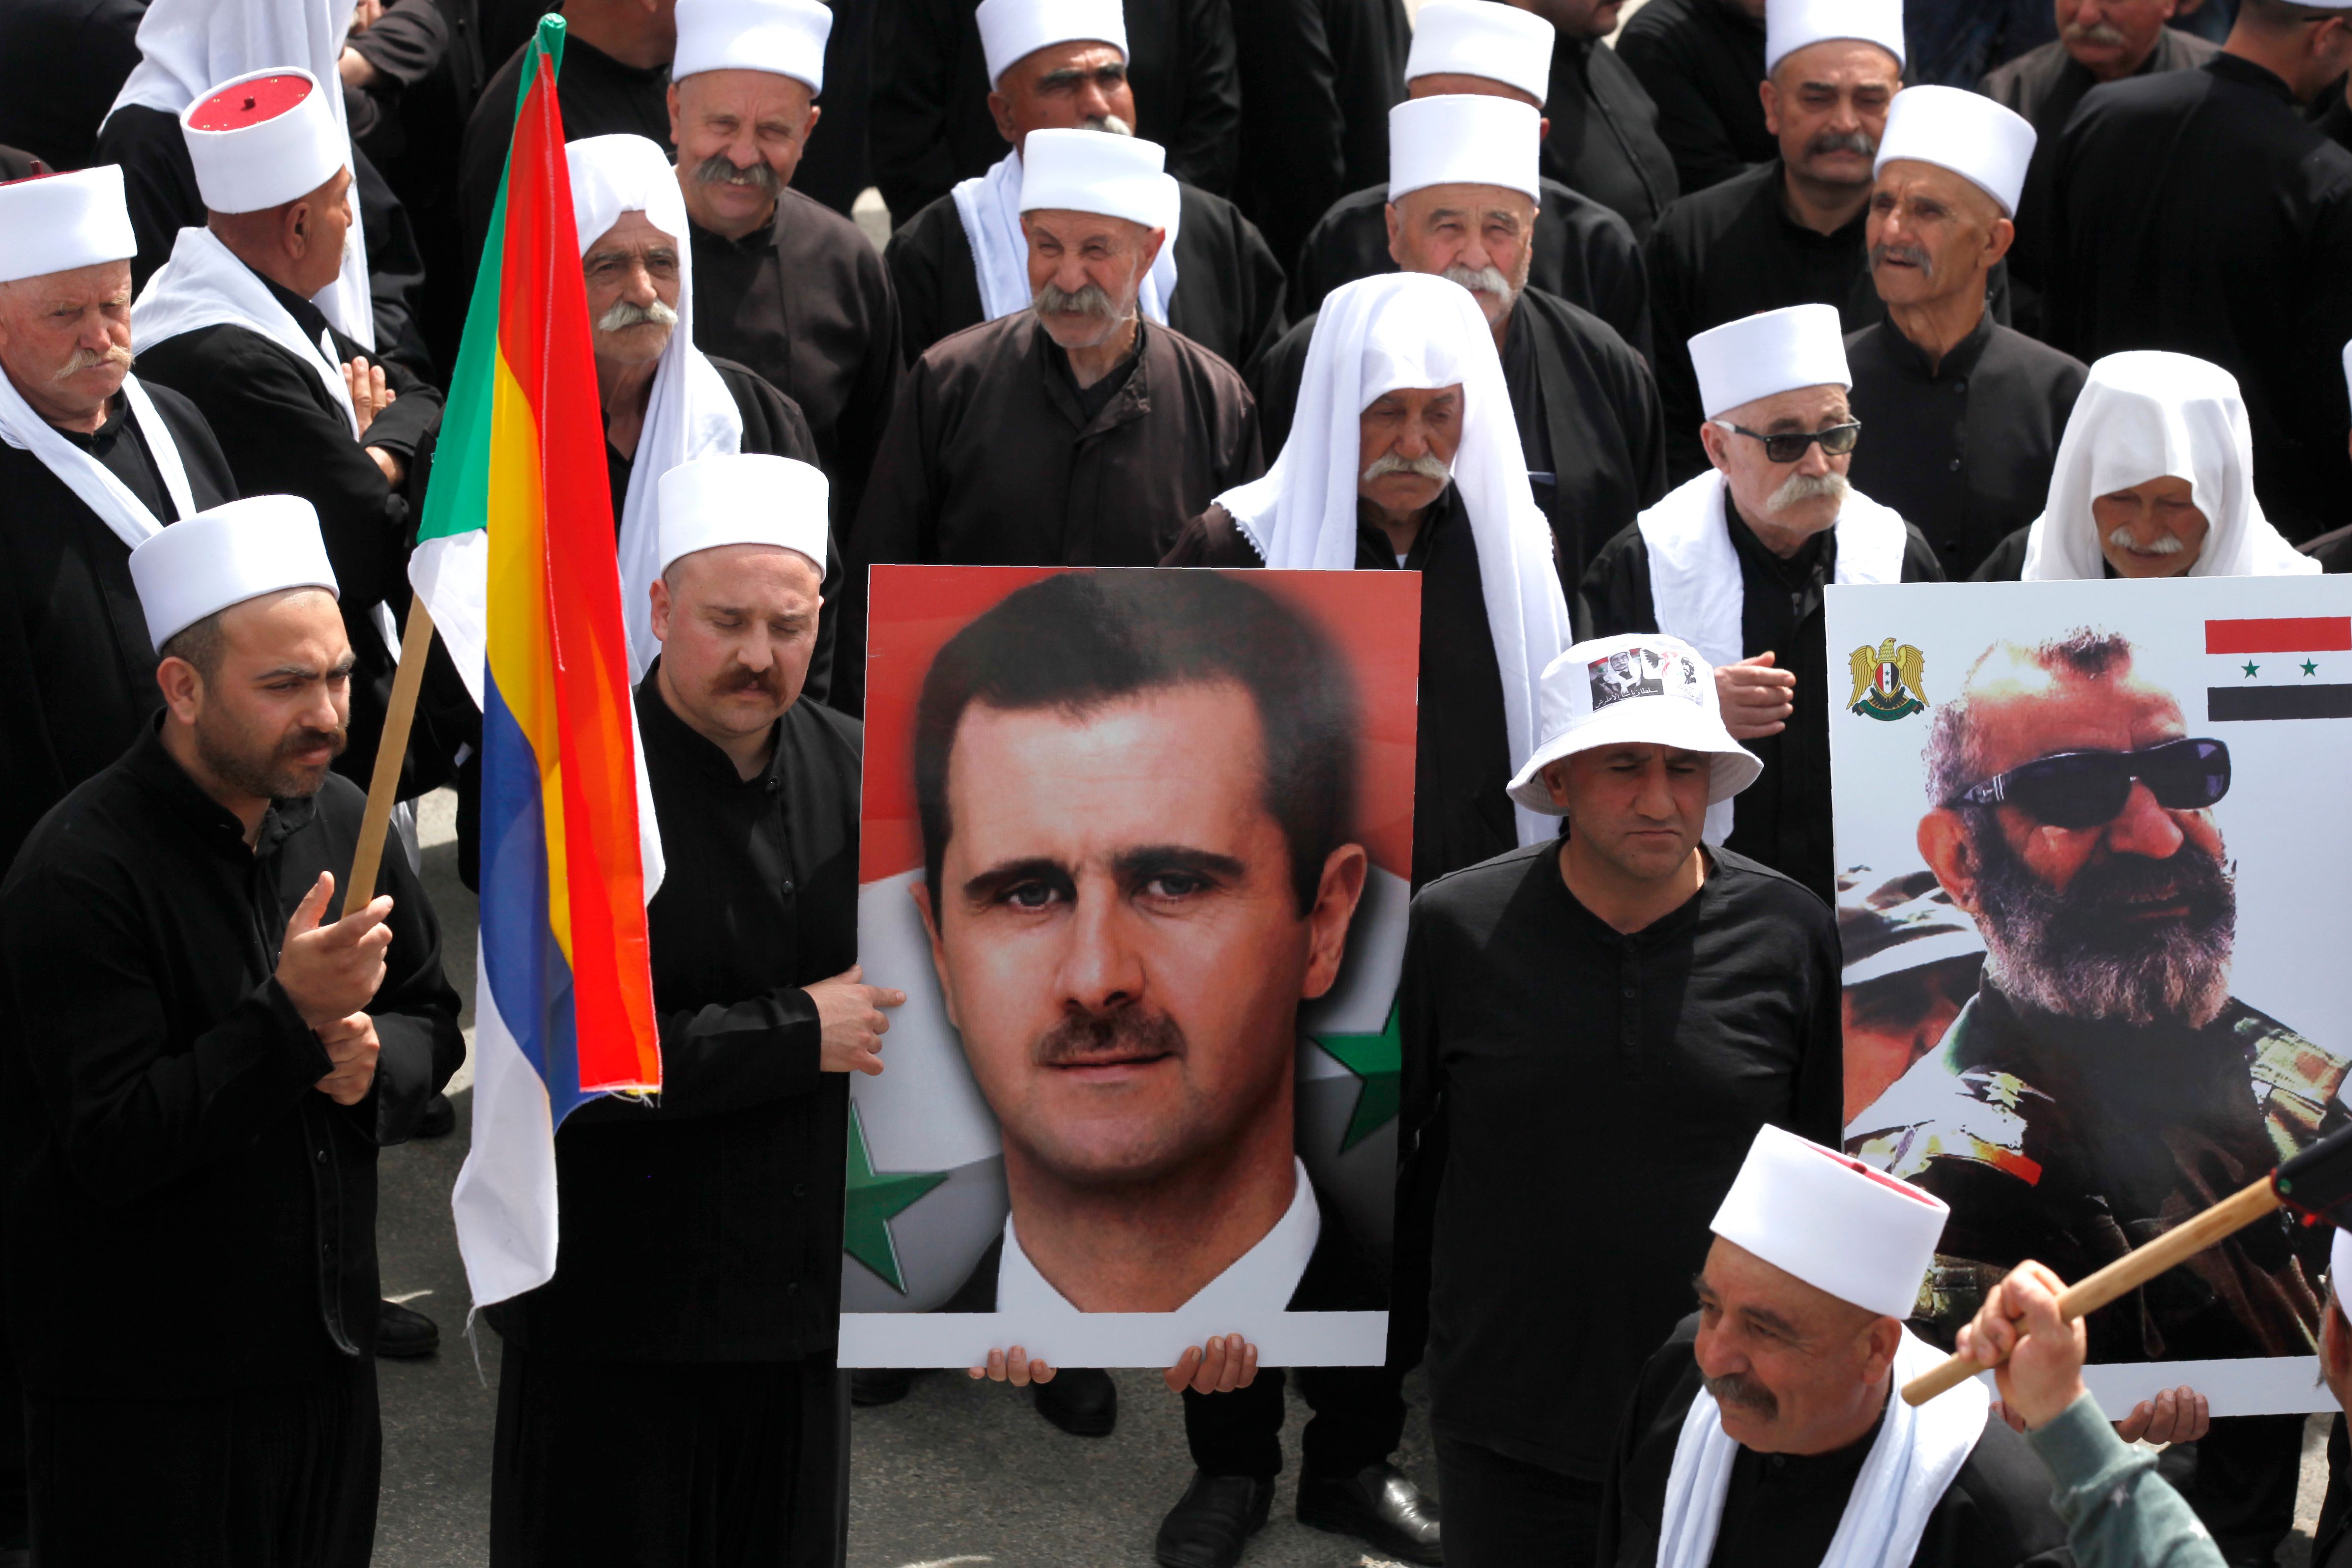  رفع صور بشار الأسد خلال المظاهرة 